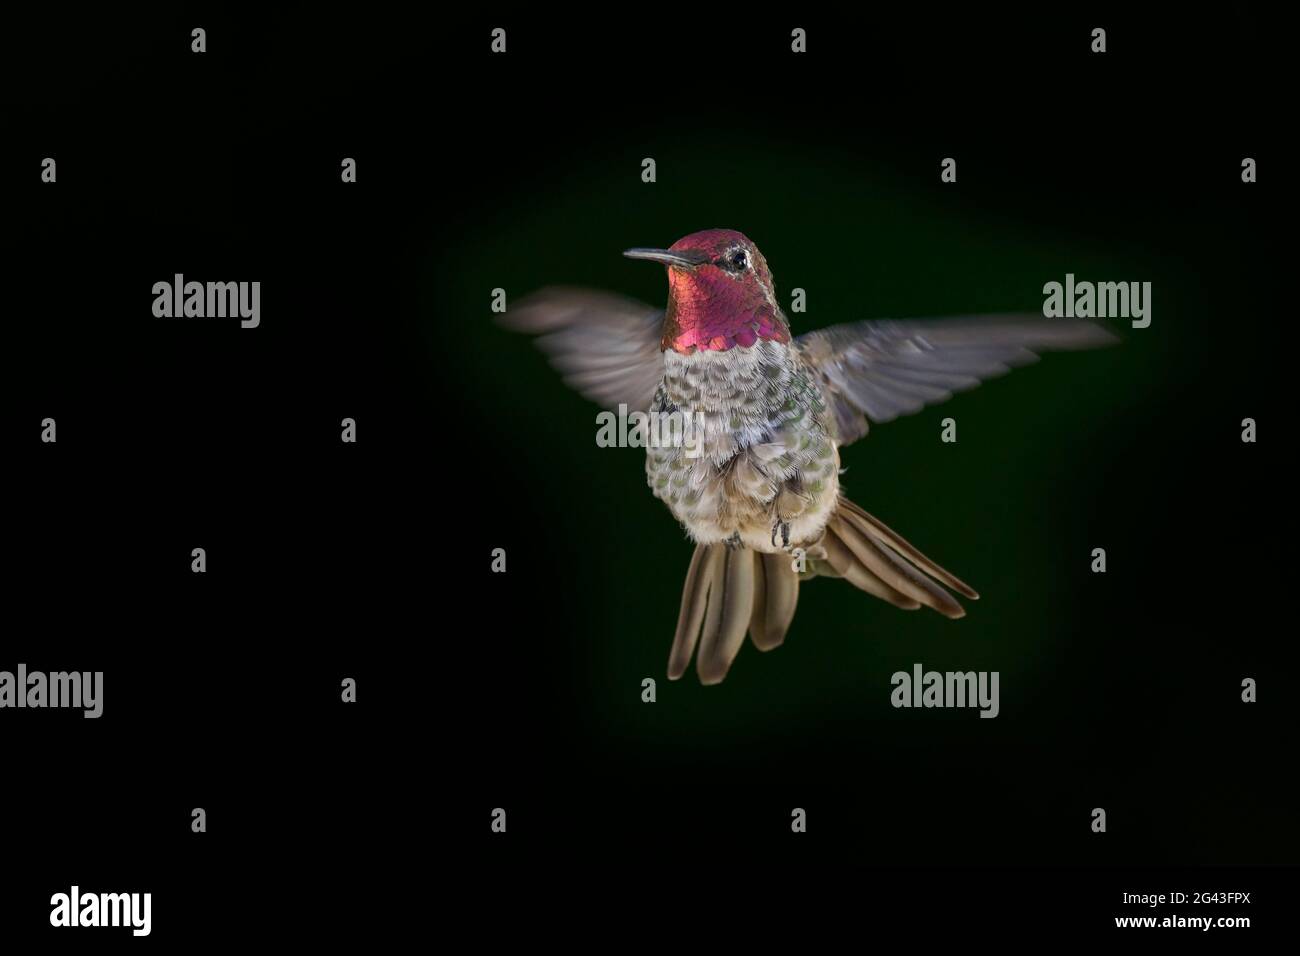 Die Kolibri (Calypte anna) des männlichen Anna zeigen Aggression, um andere Kolibris von der Nahrungsquelle fernzuhalten. Stockfoto